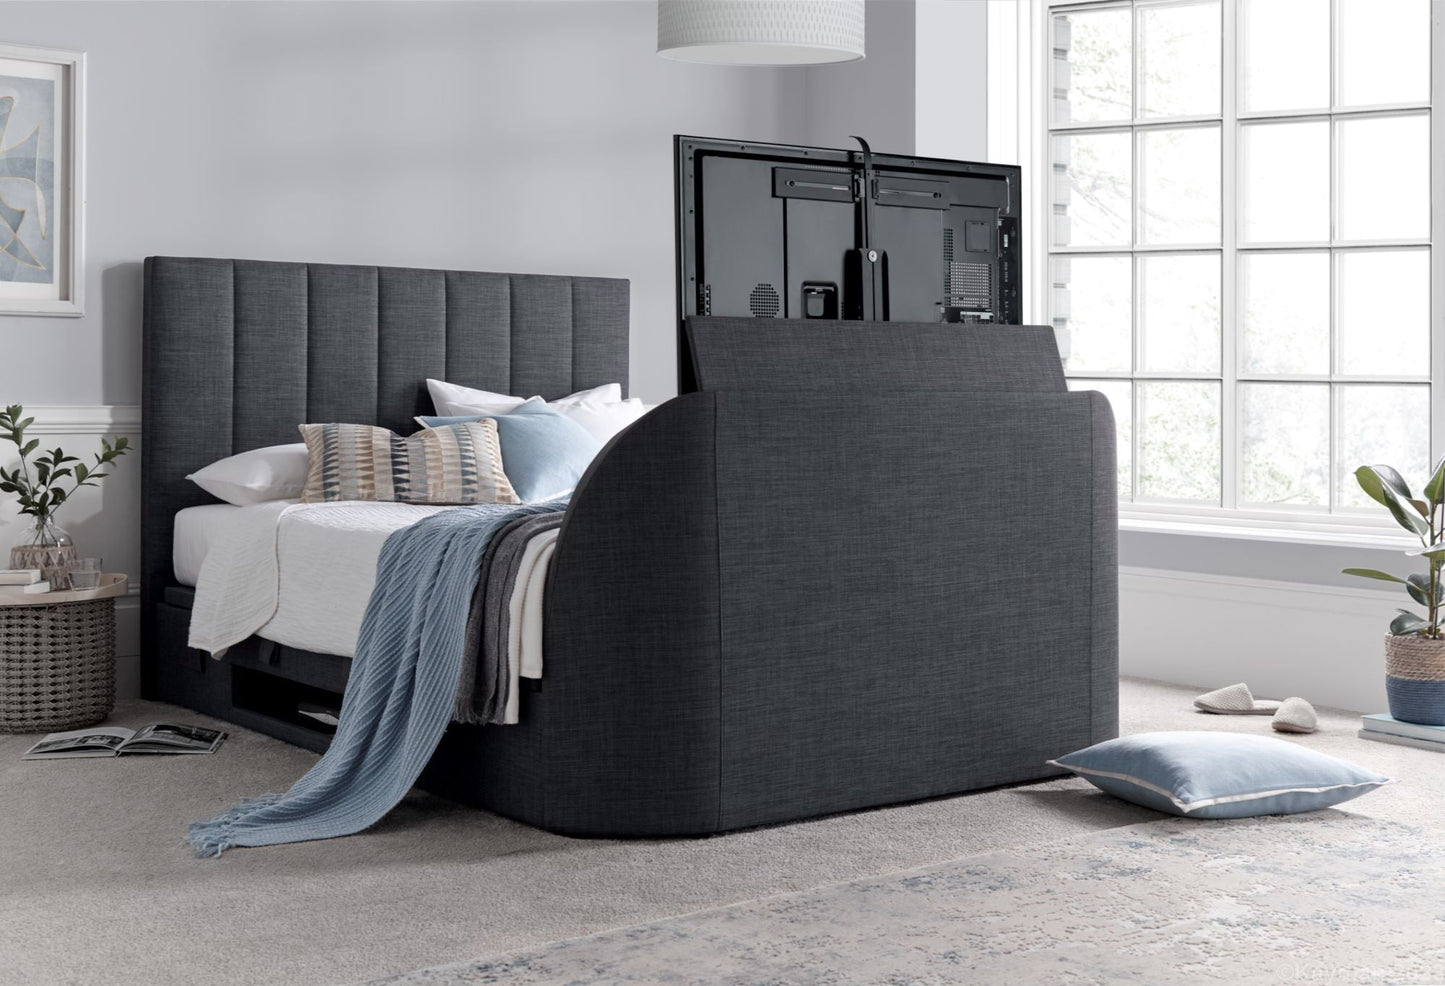 Medway Ottoman Storage TV Bed Frame - Slate Grey - TV Beds Northwest - MEDTV135SL - doubletvbed - kaydian